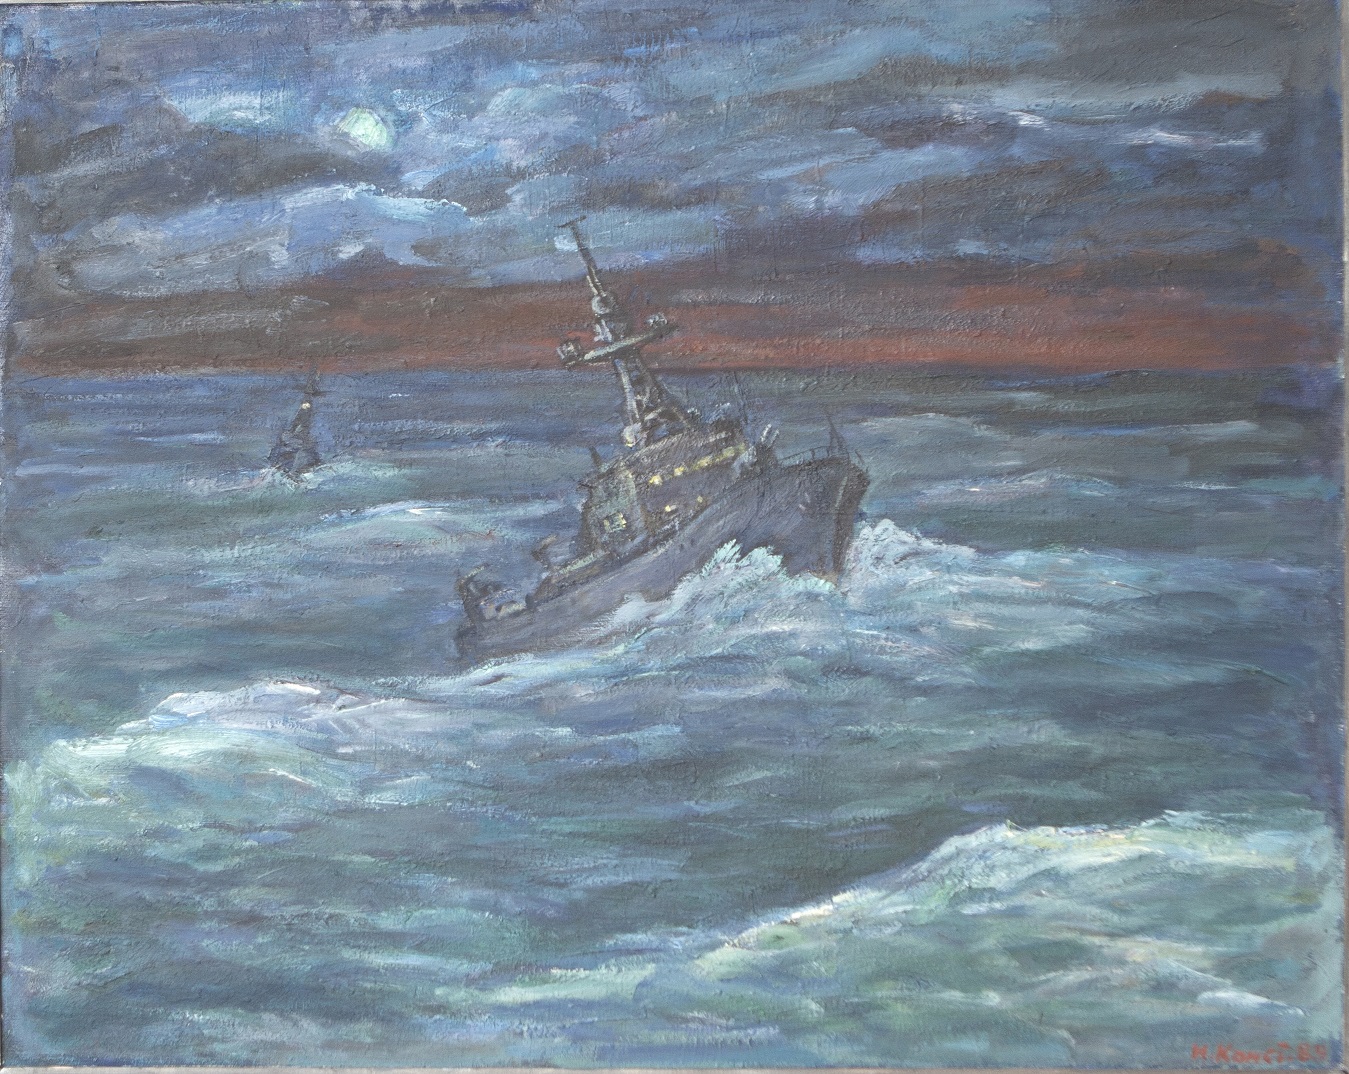 О «Морских историях» можно узнать на выставке в Доме-музее Игошева